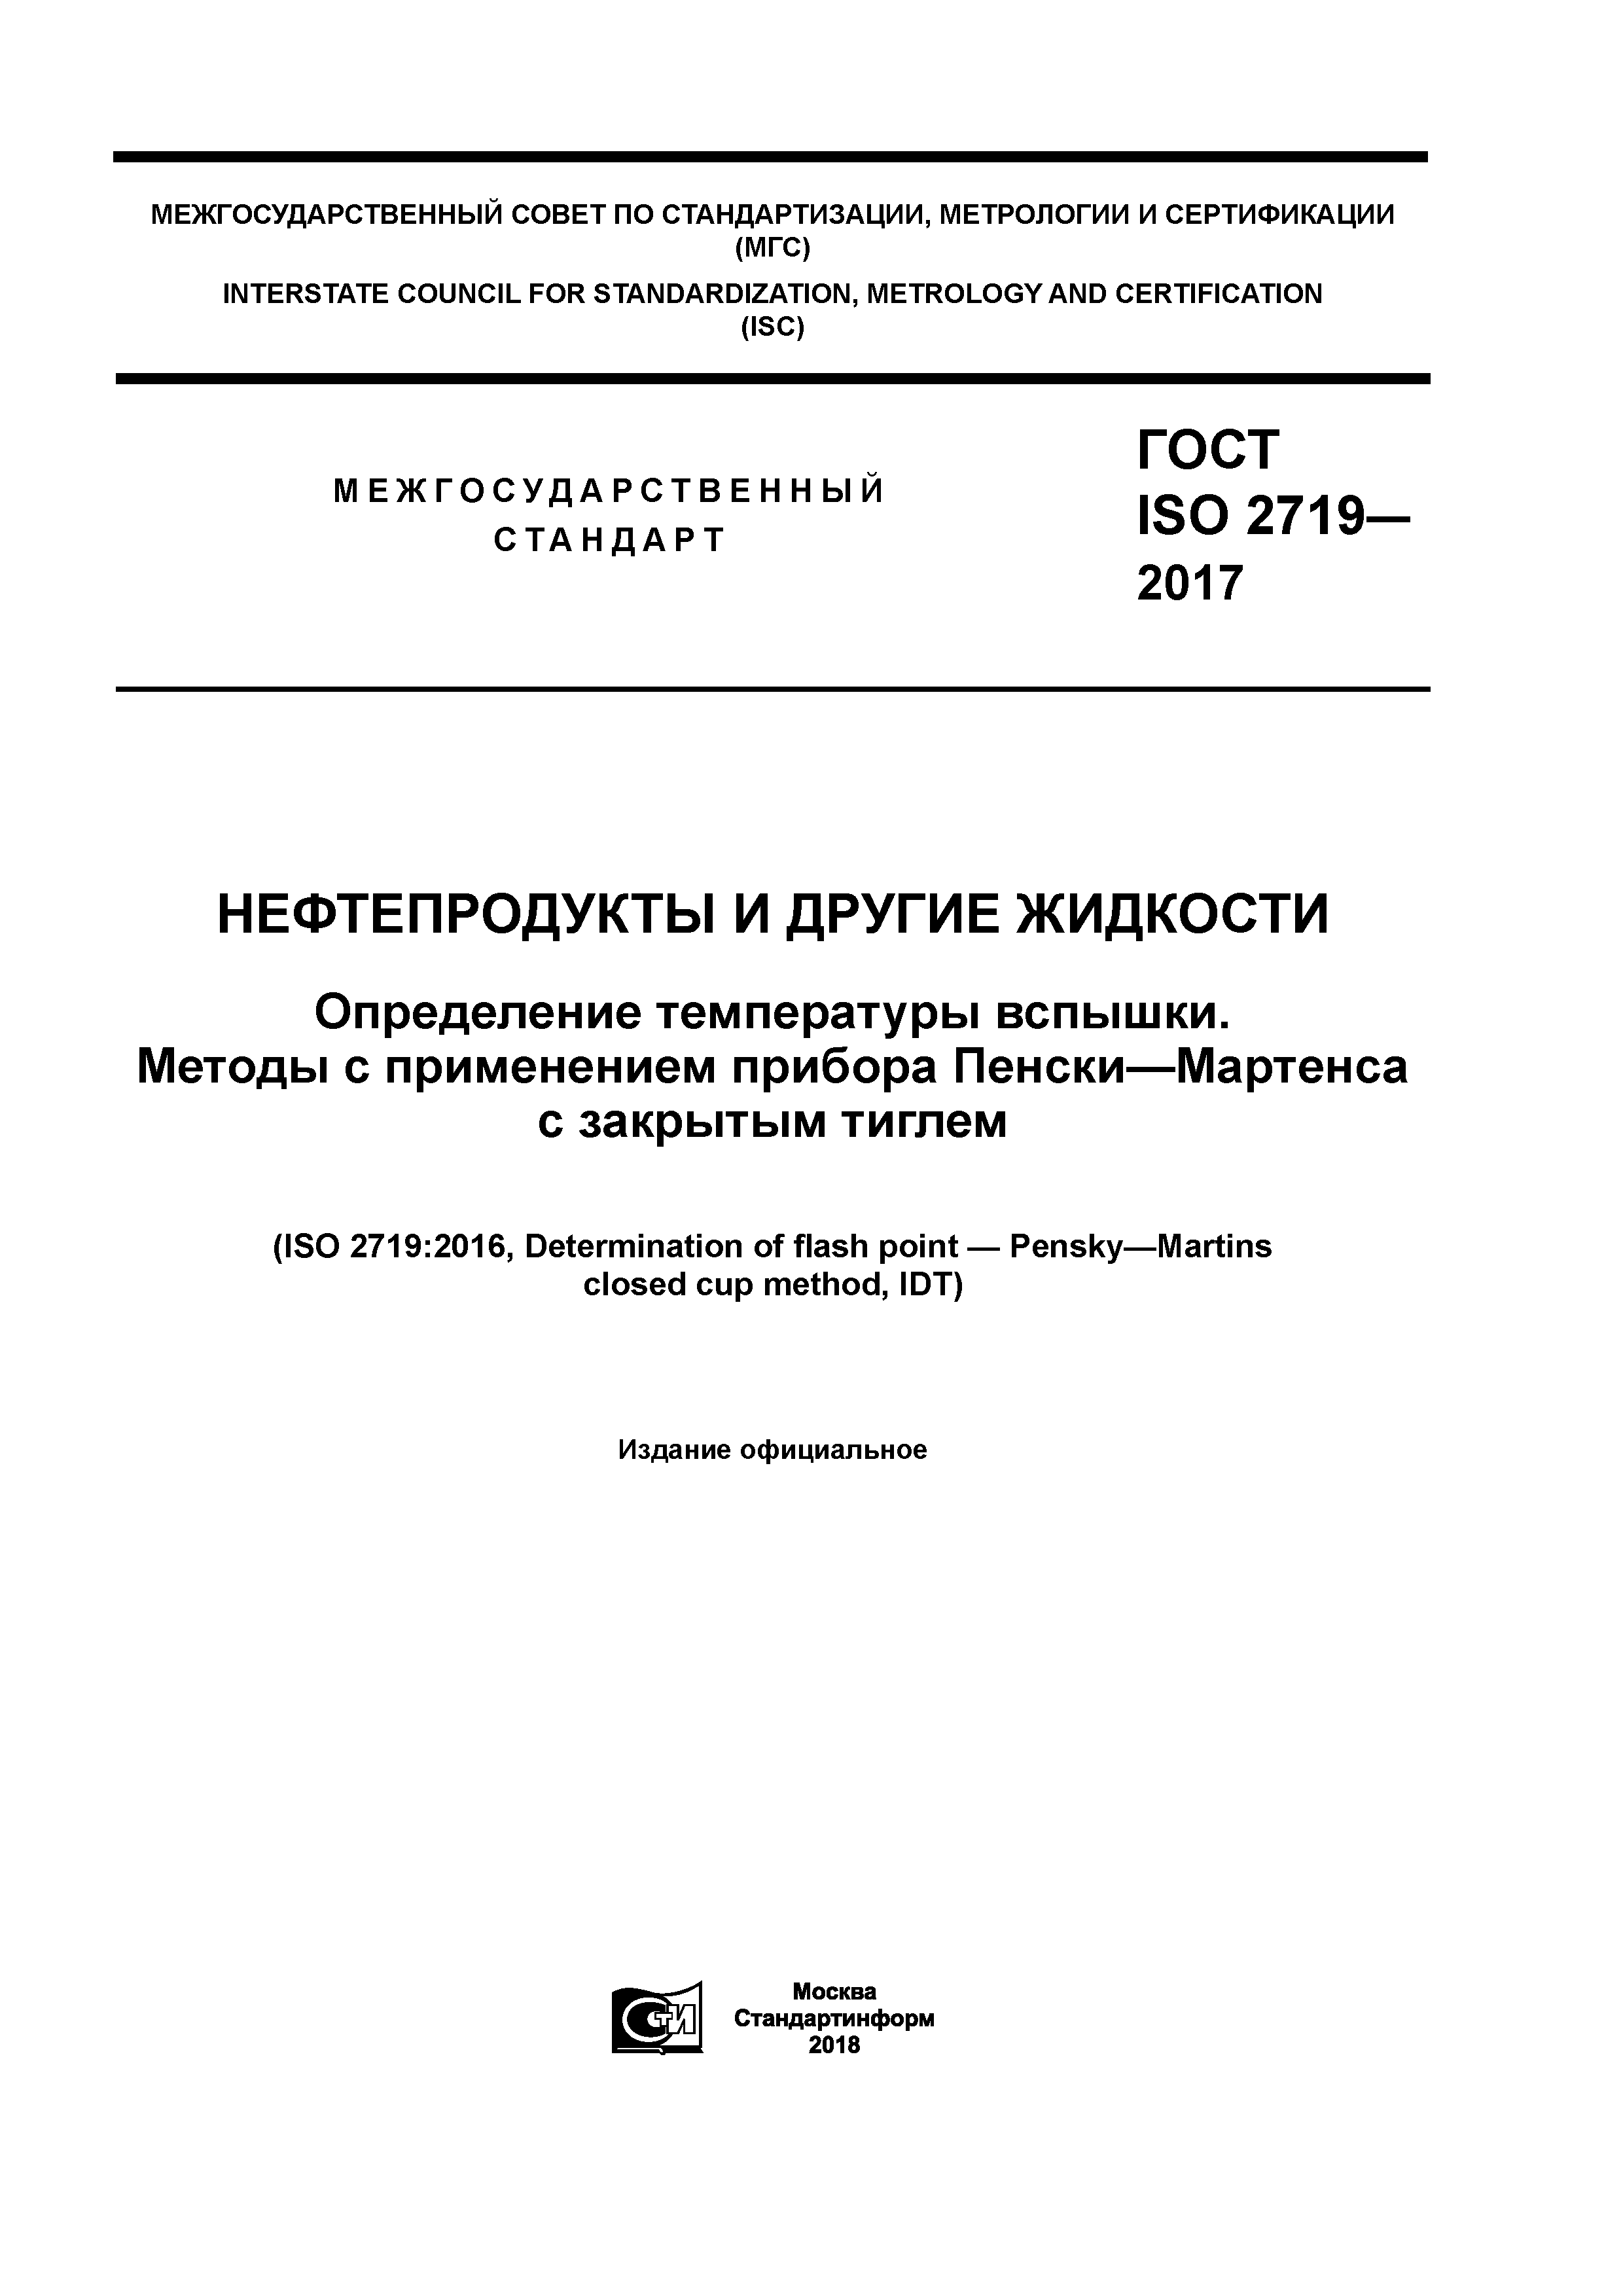 ГОСТ ISO 2719-2017